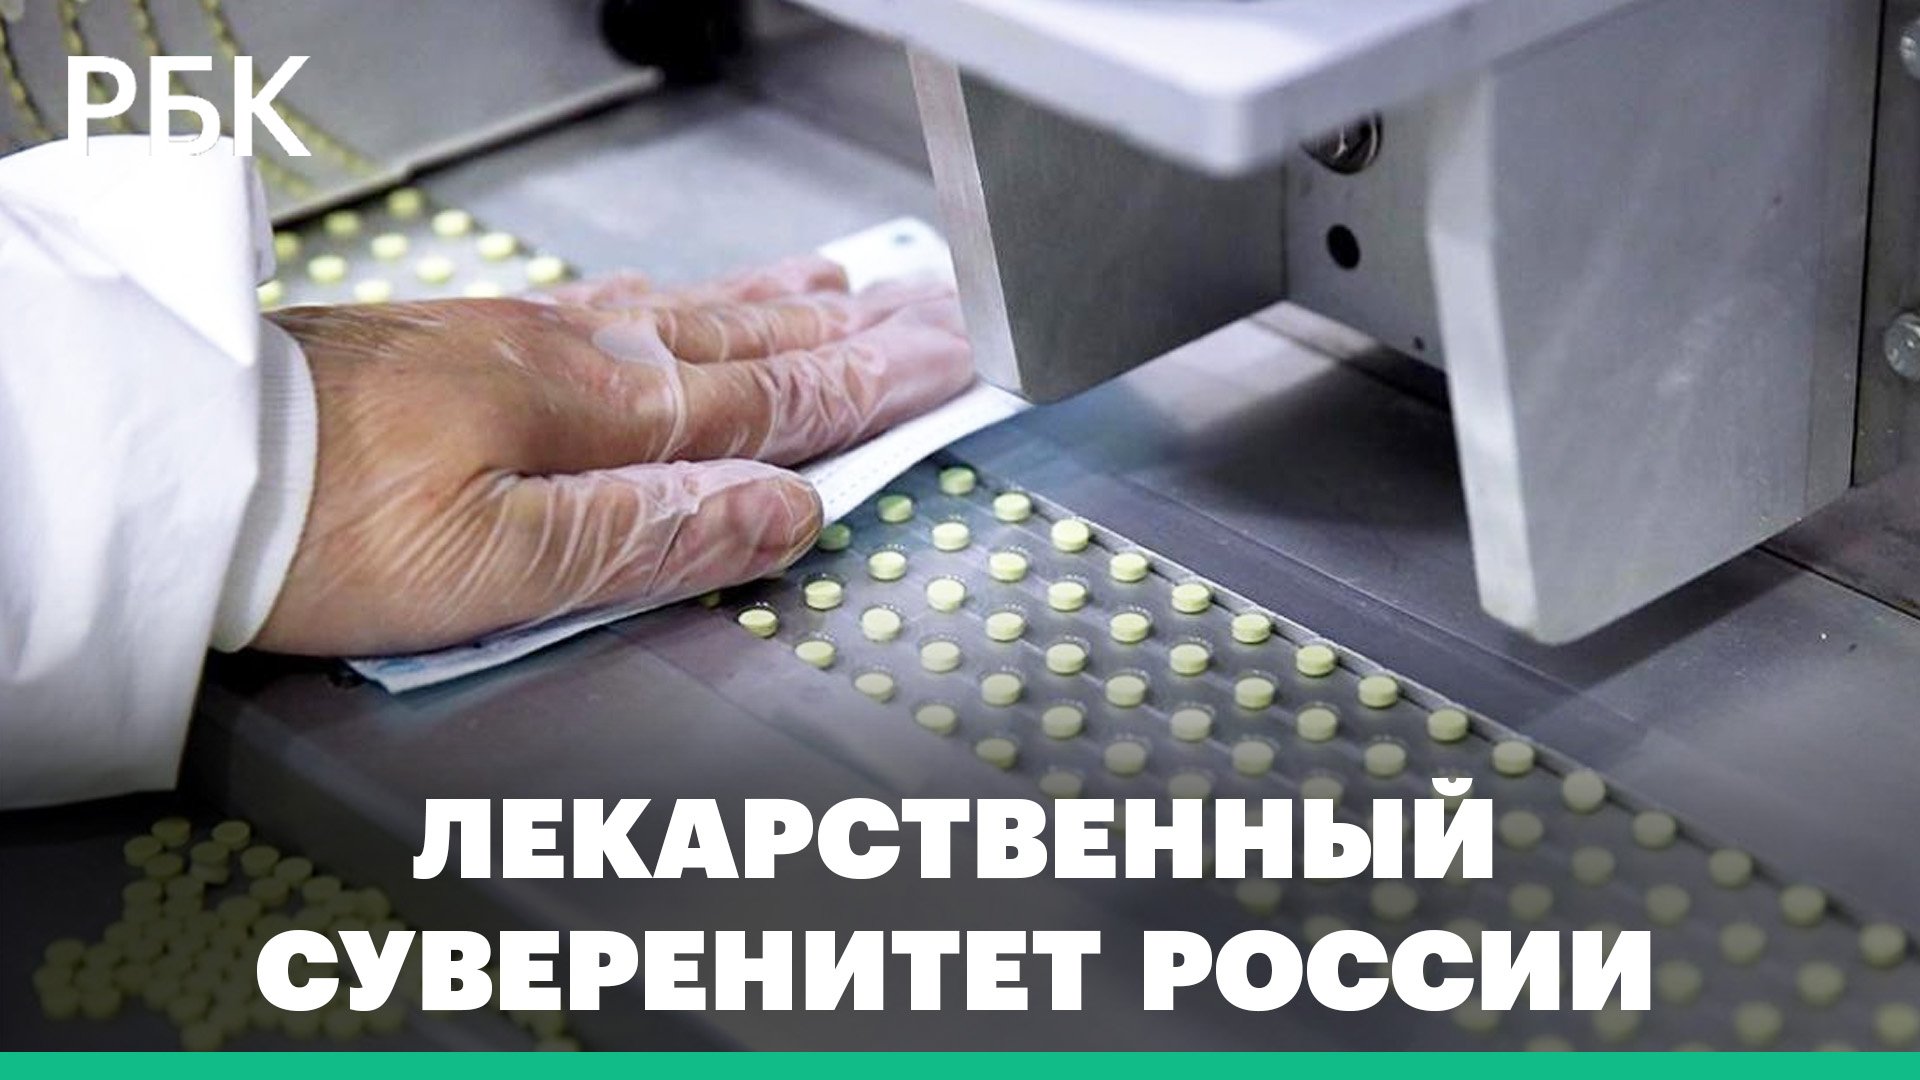 Россия может достичь лекарственного суверенитета к 2030-му году